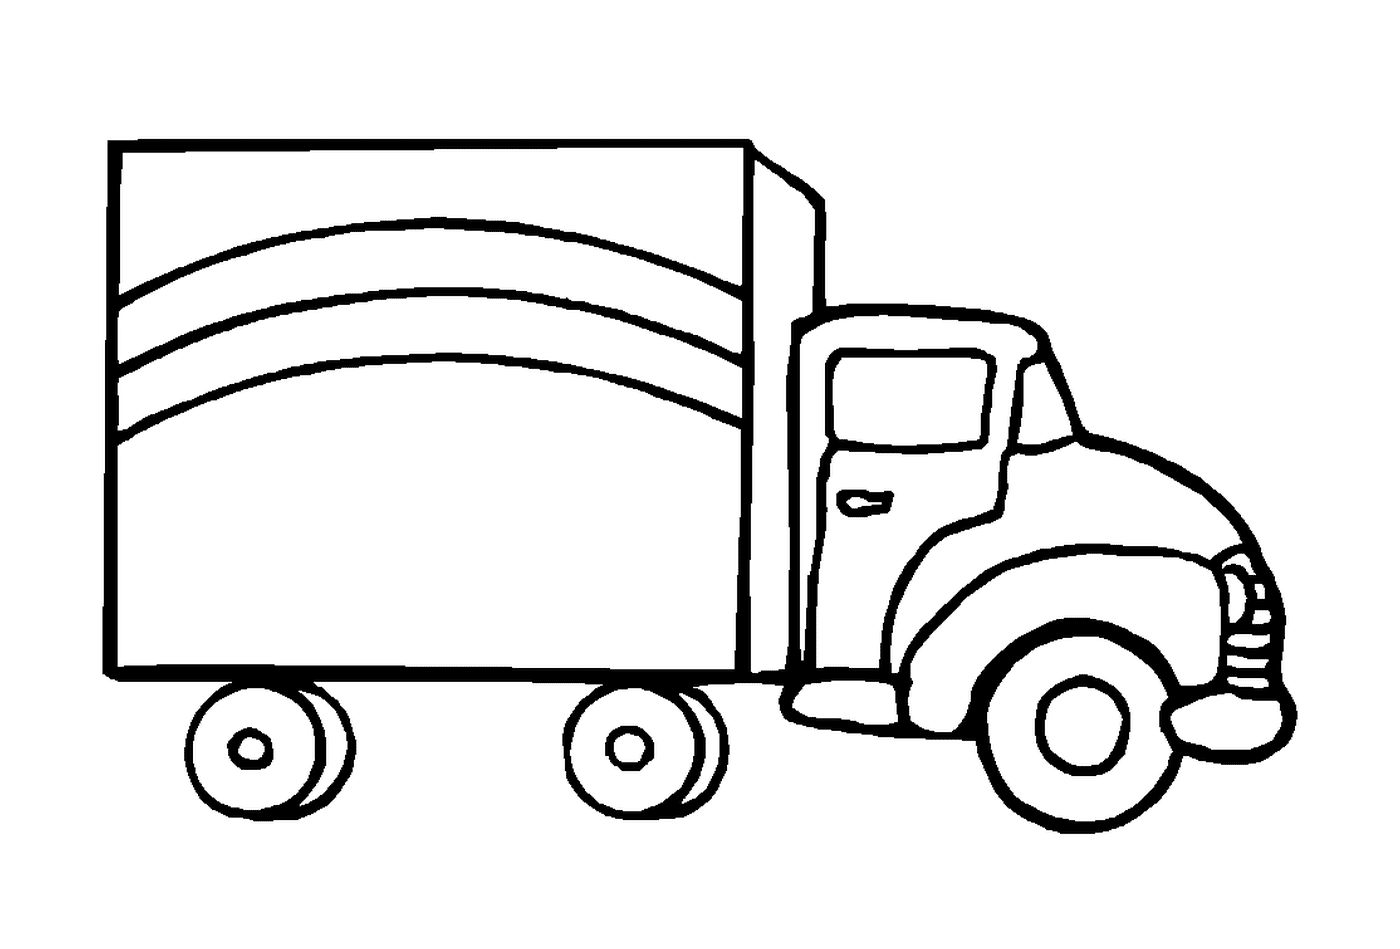  Ein gezogener LKW 